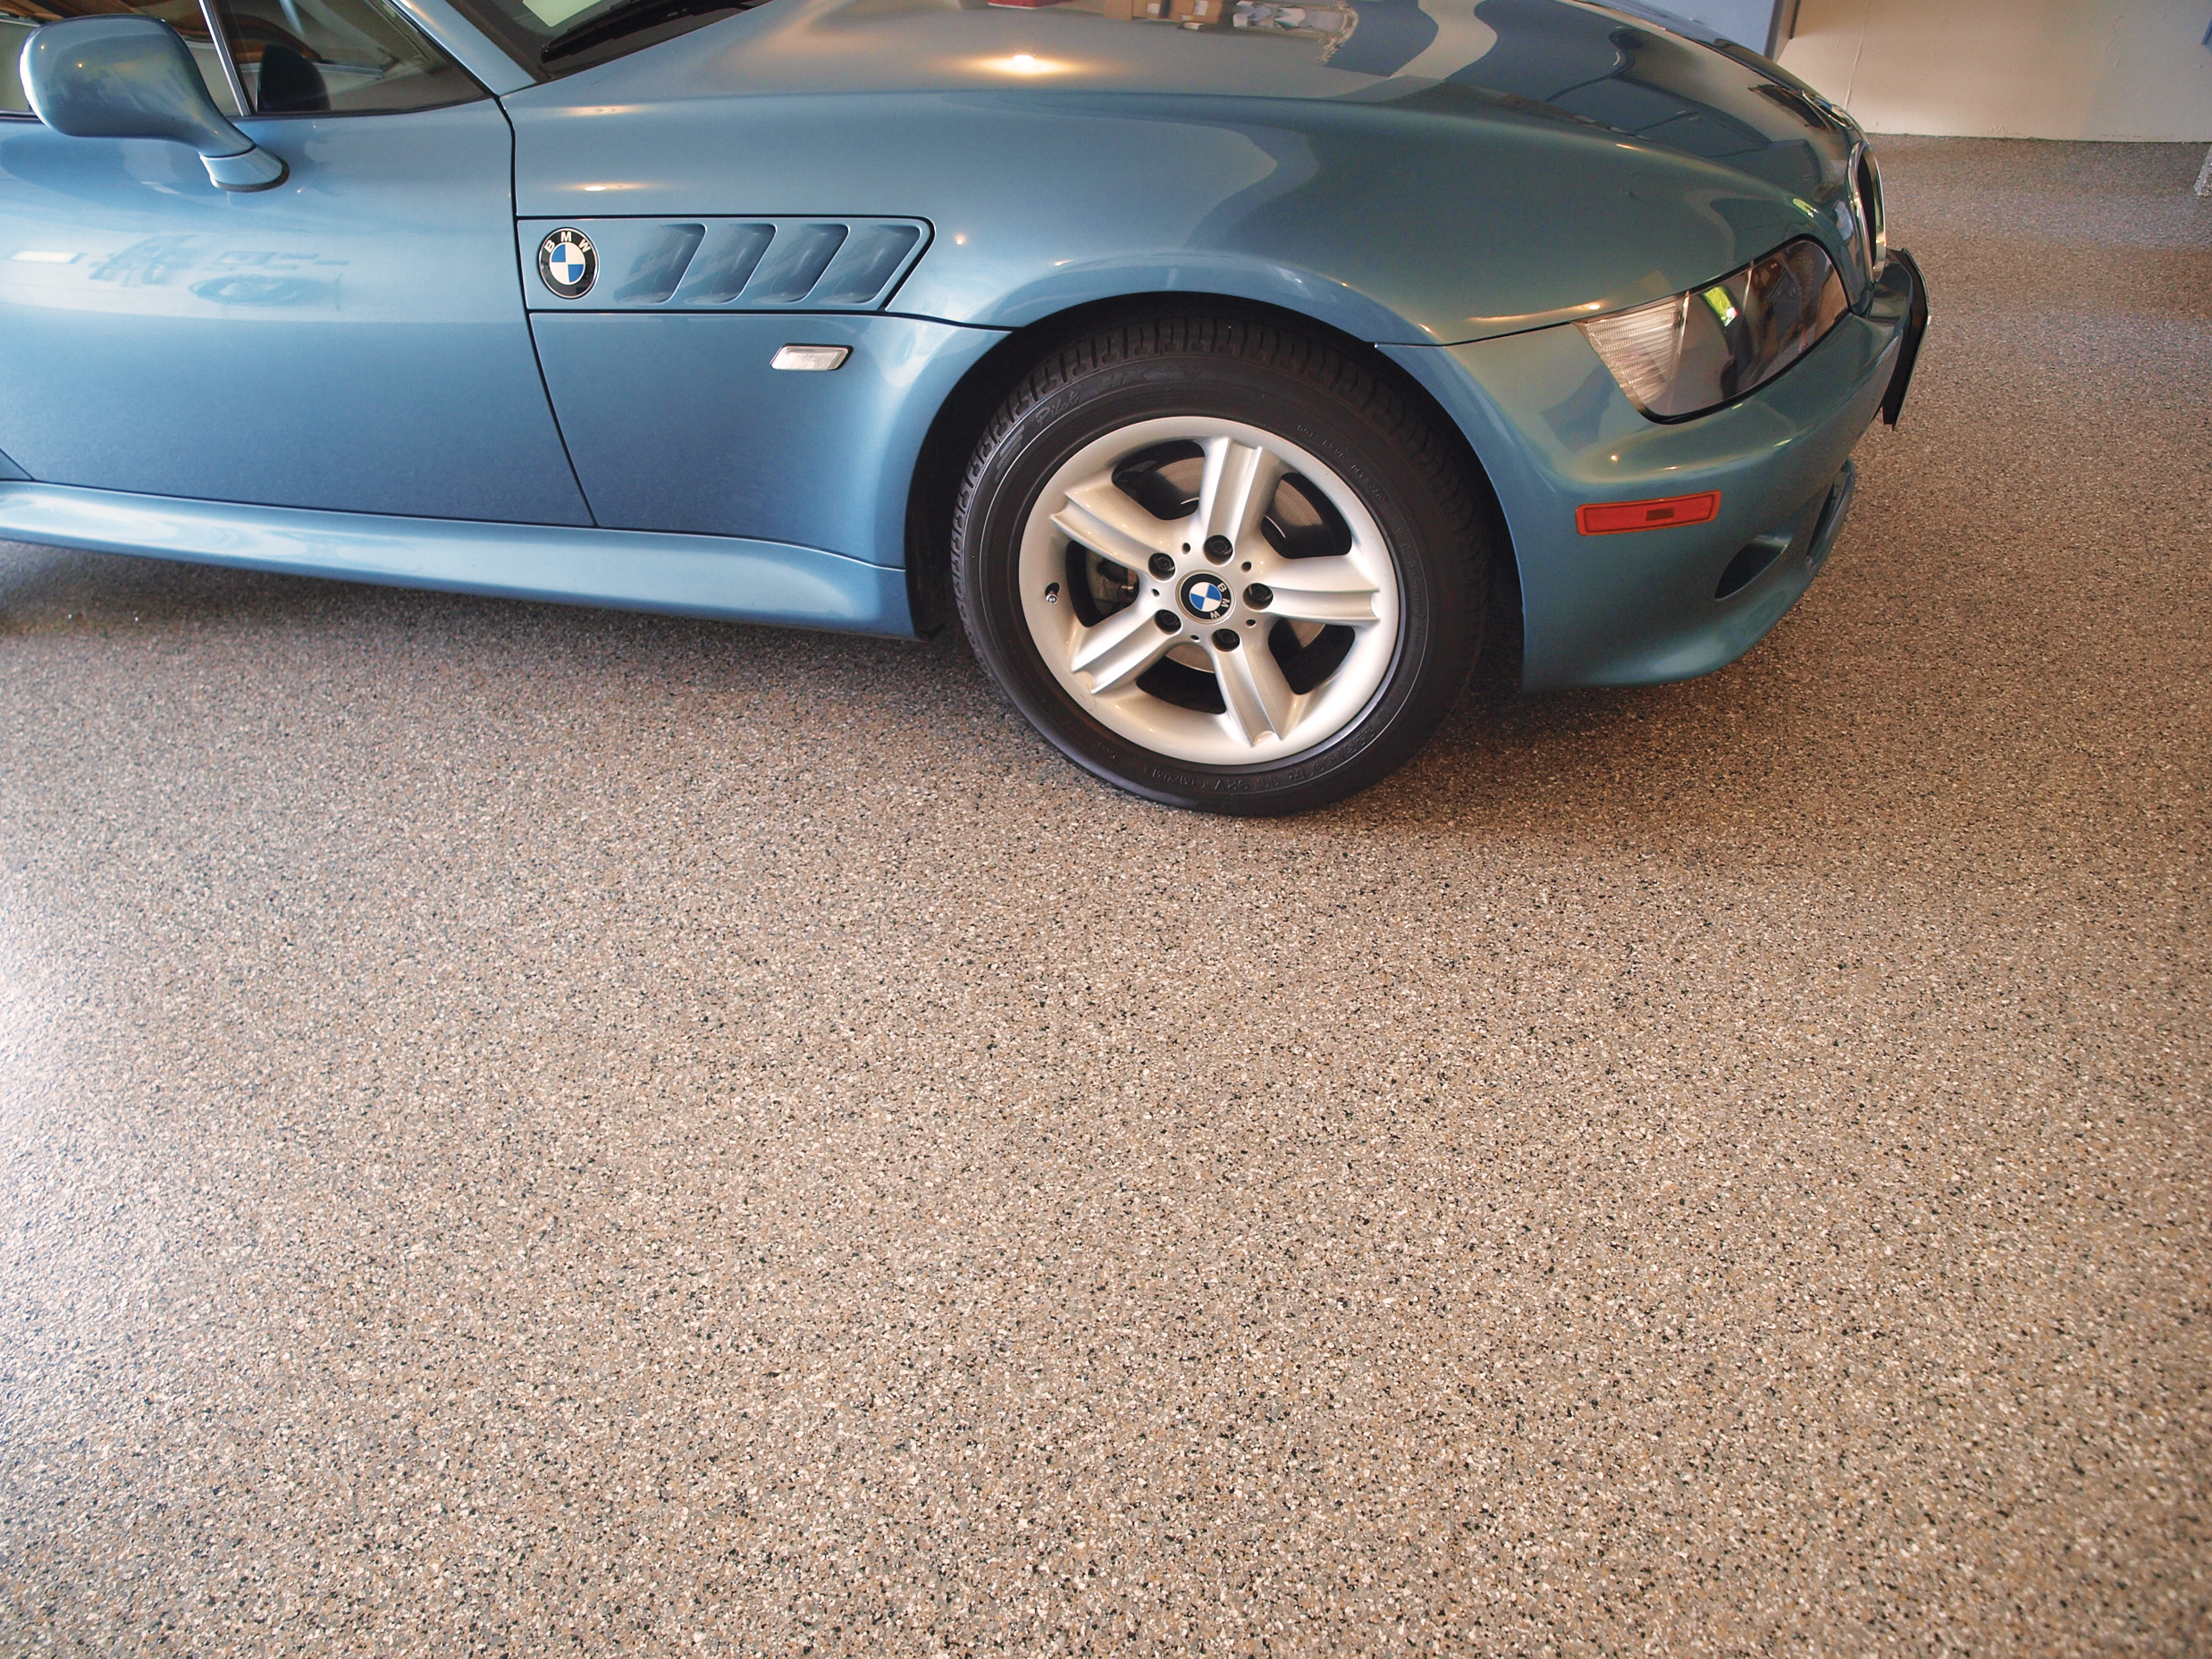 Blue BMW parked in a garage